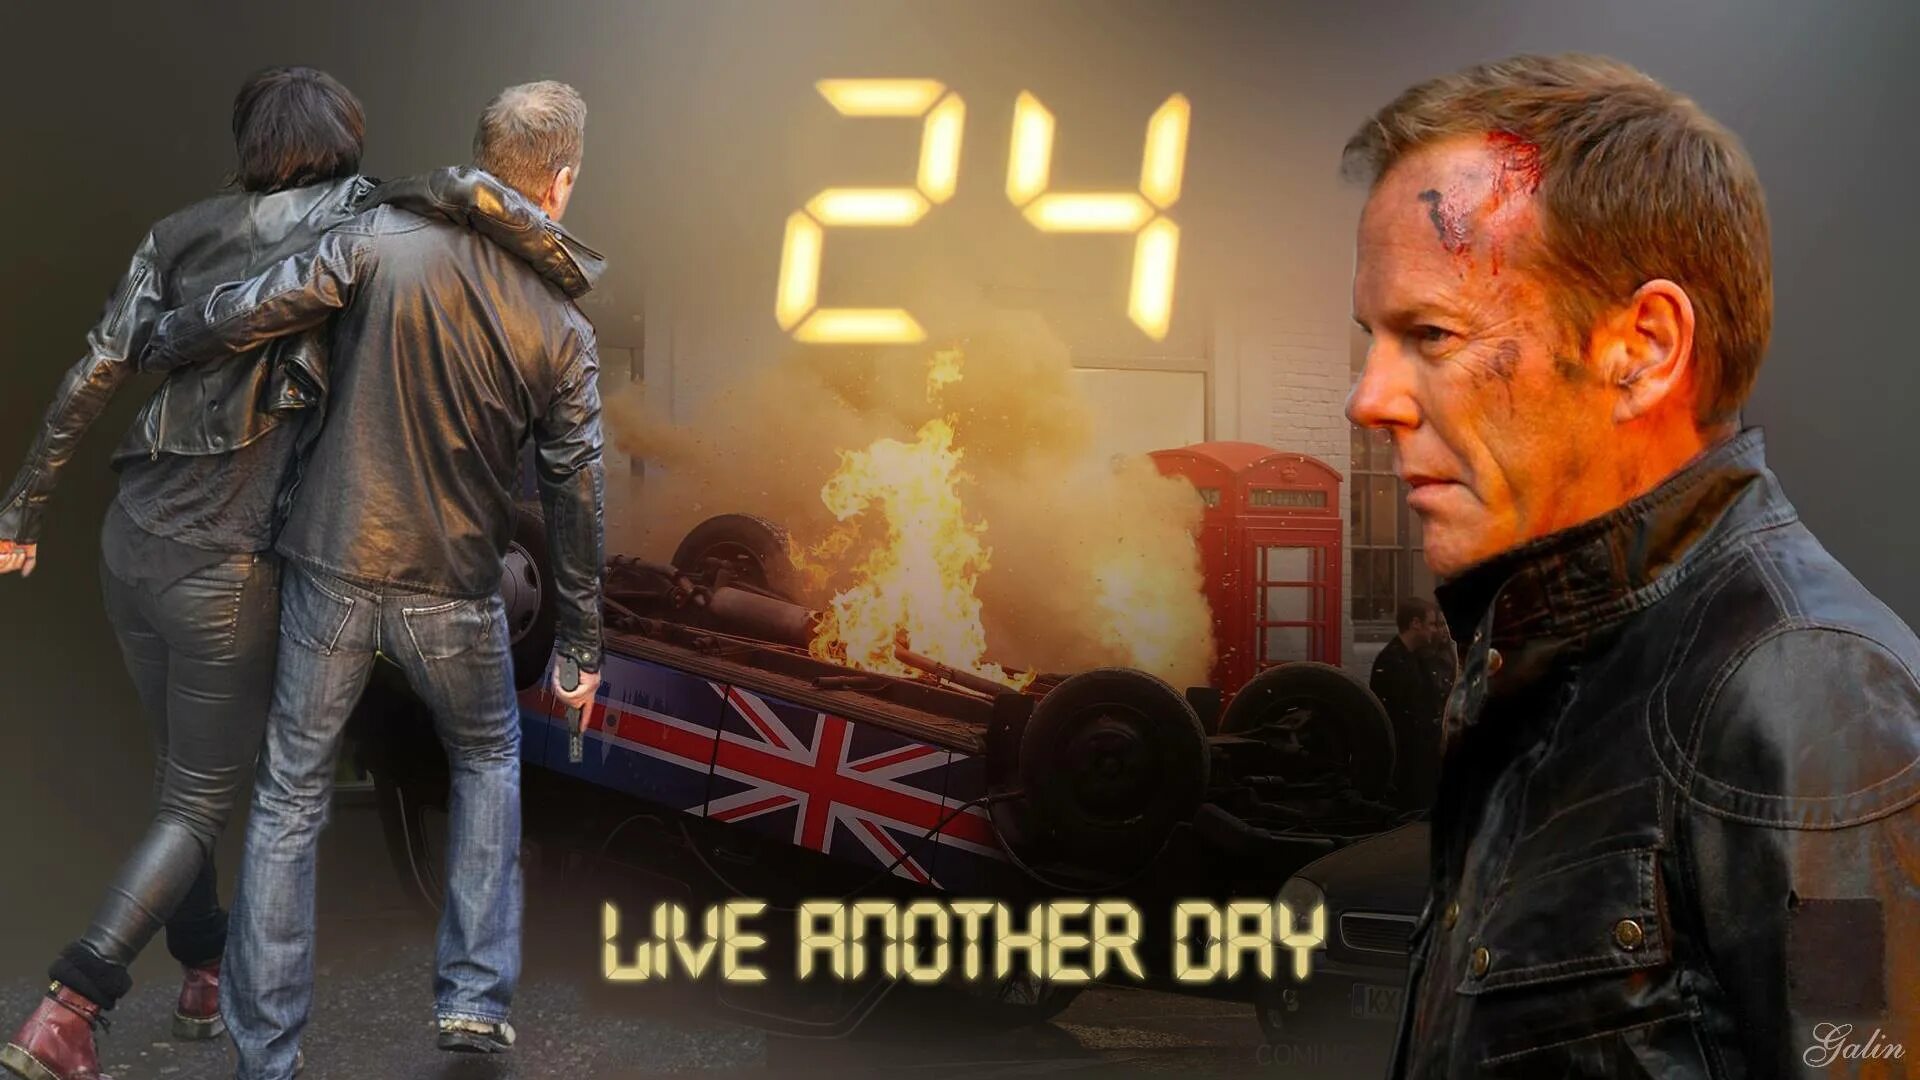 24 Live another Day. 24 Часа: проживи еще один день. Live another Day kordhell. Двадцать 24 часа